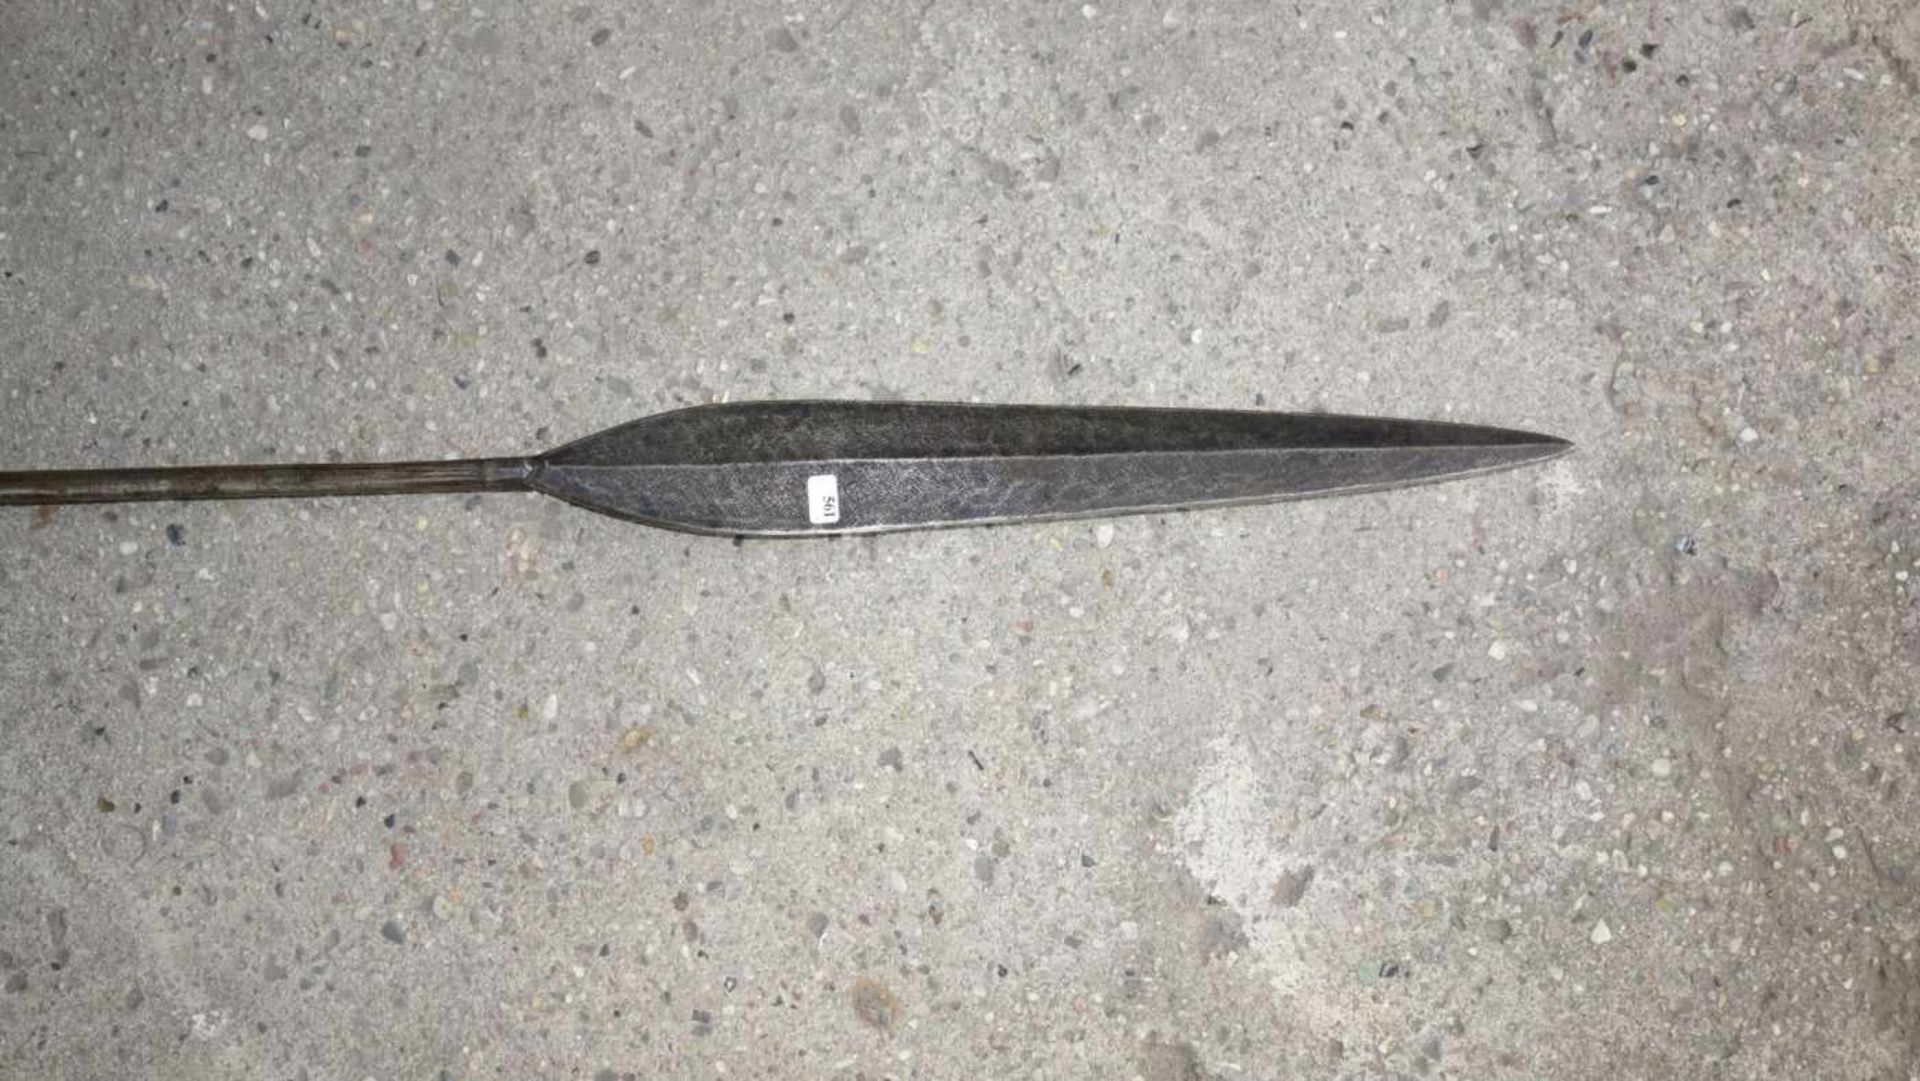 SPEER / WURFSPIESS / spear, Metall und Holz, Papua Neuguinea oder Afrika. Stab aus Metall mit mittig - Bild 2 aus 4